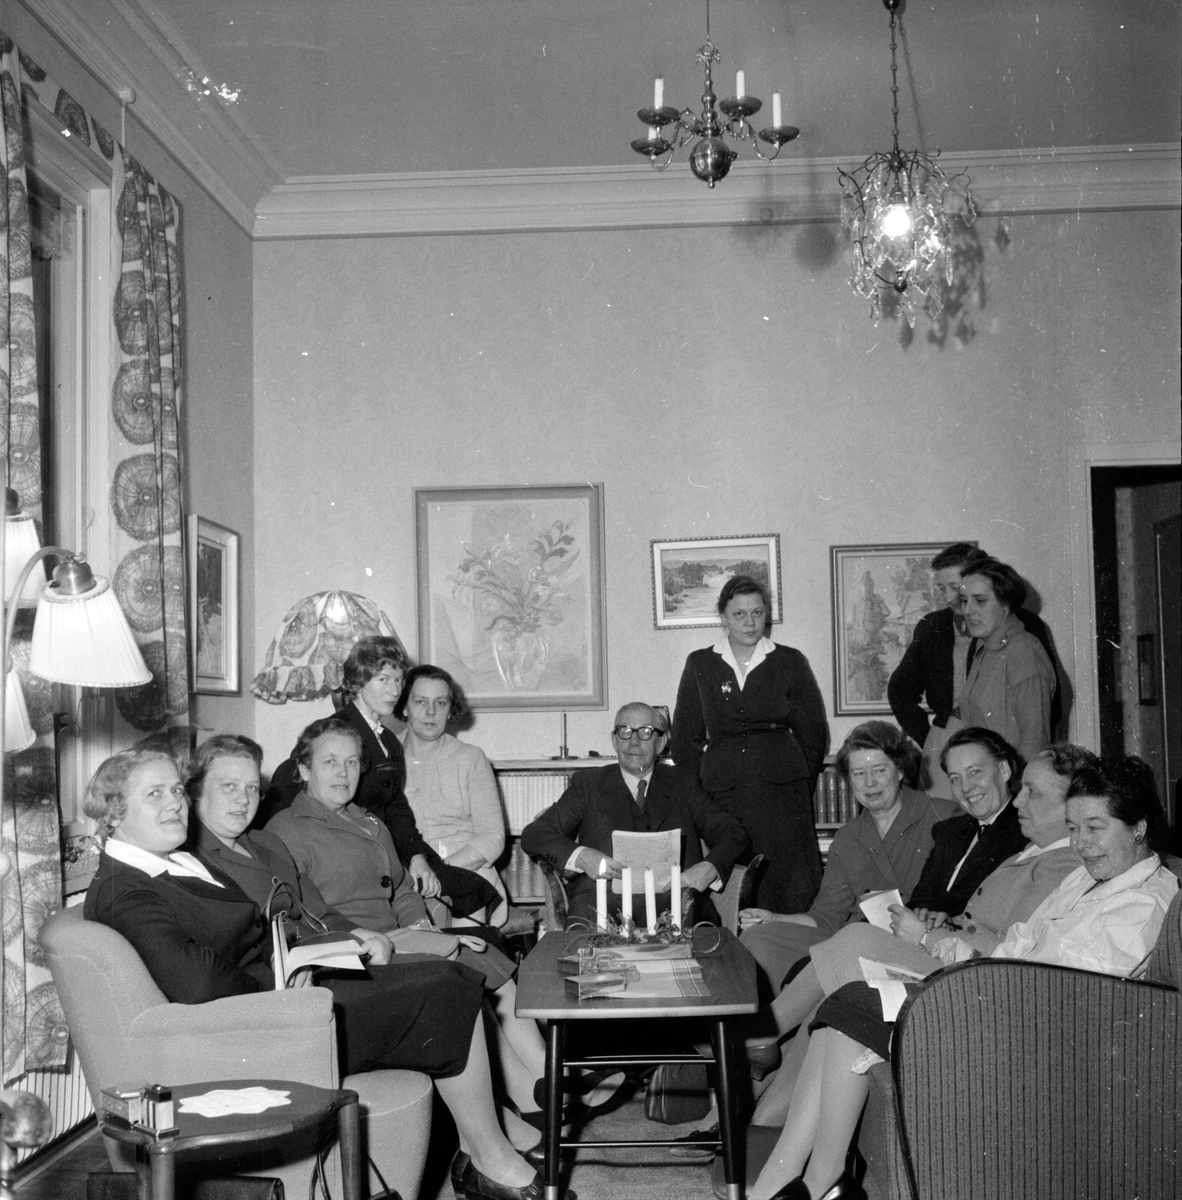 TBV-Cirkel i Hembygdskunskap,
2 December 1958